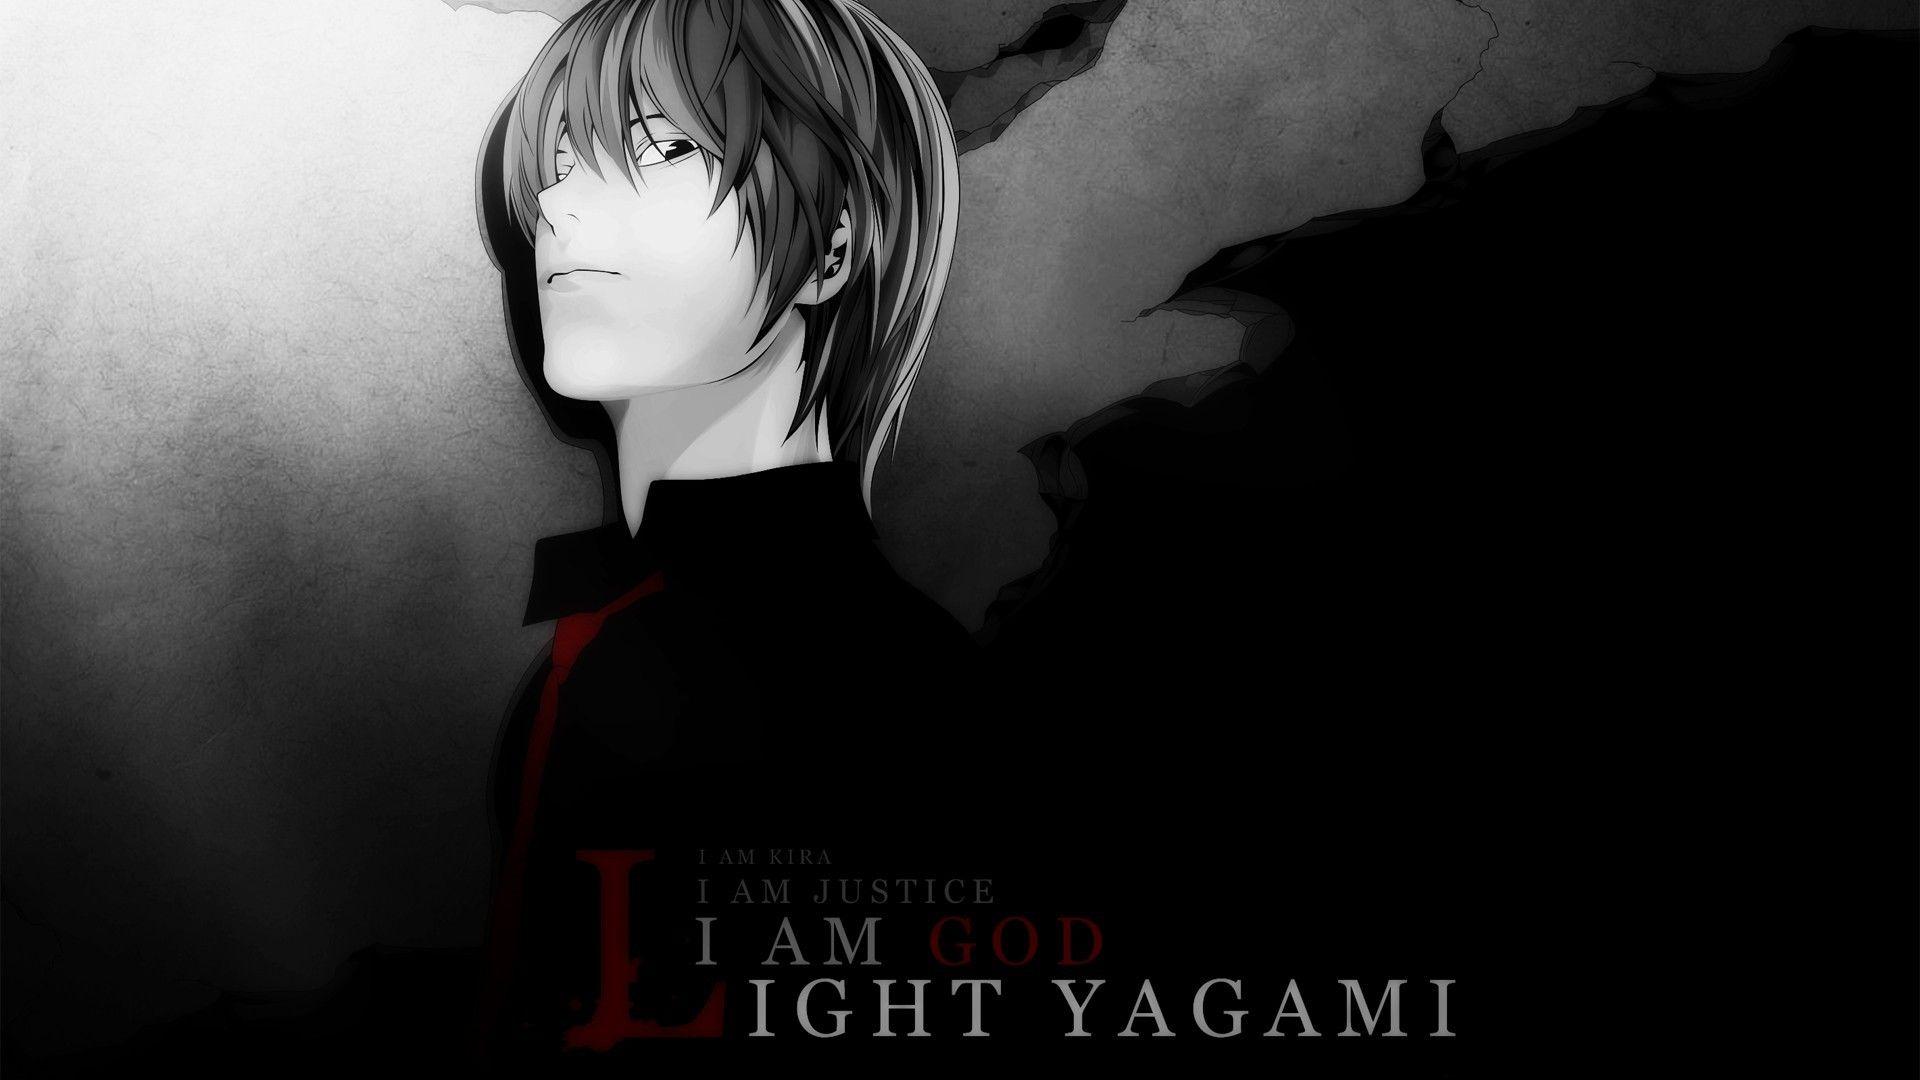 Light Yagami de Death Note Wallpaper 1920x1080